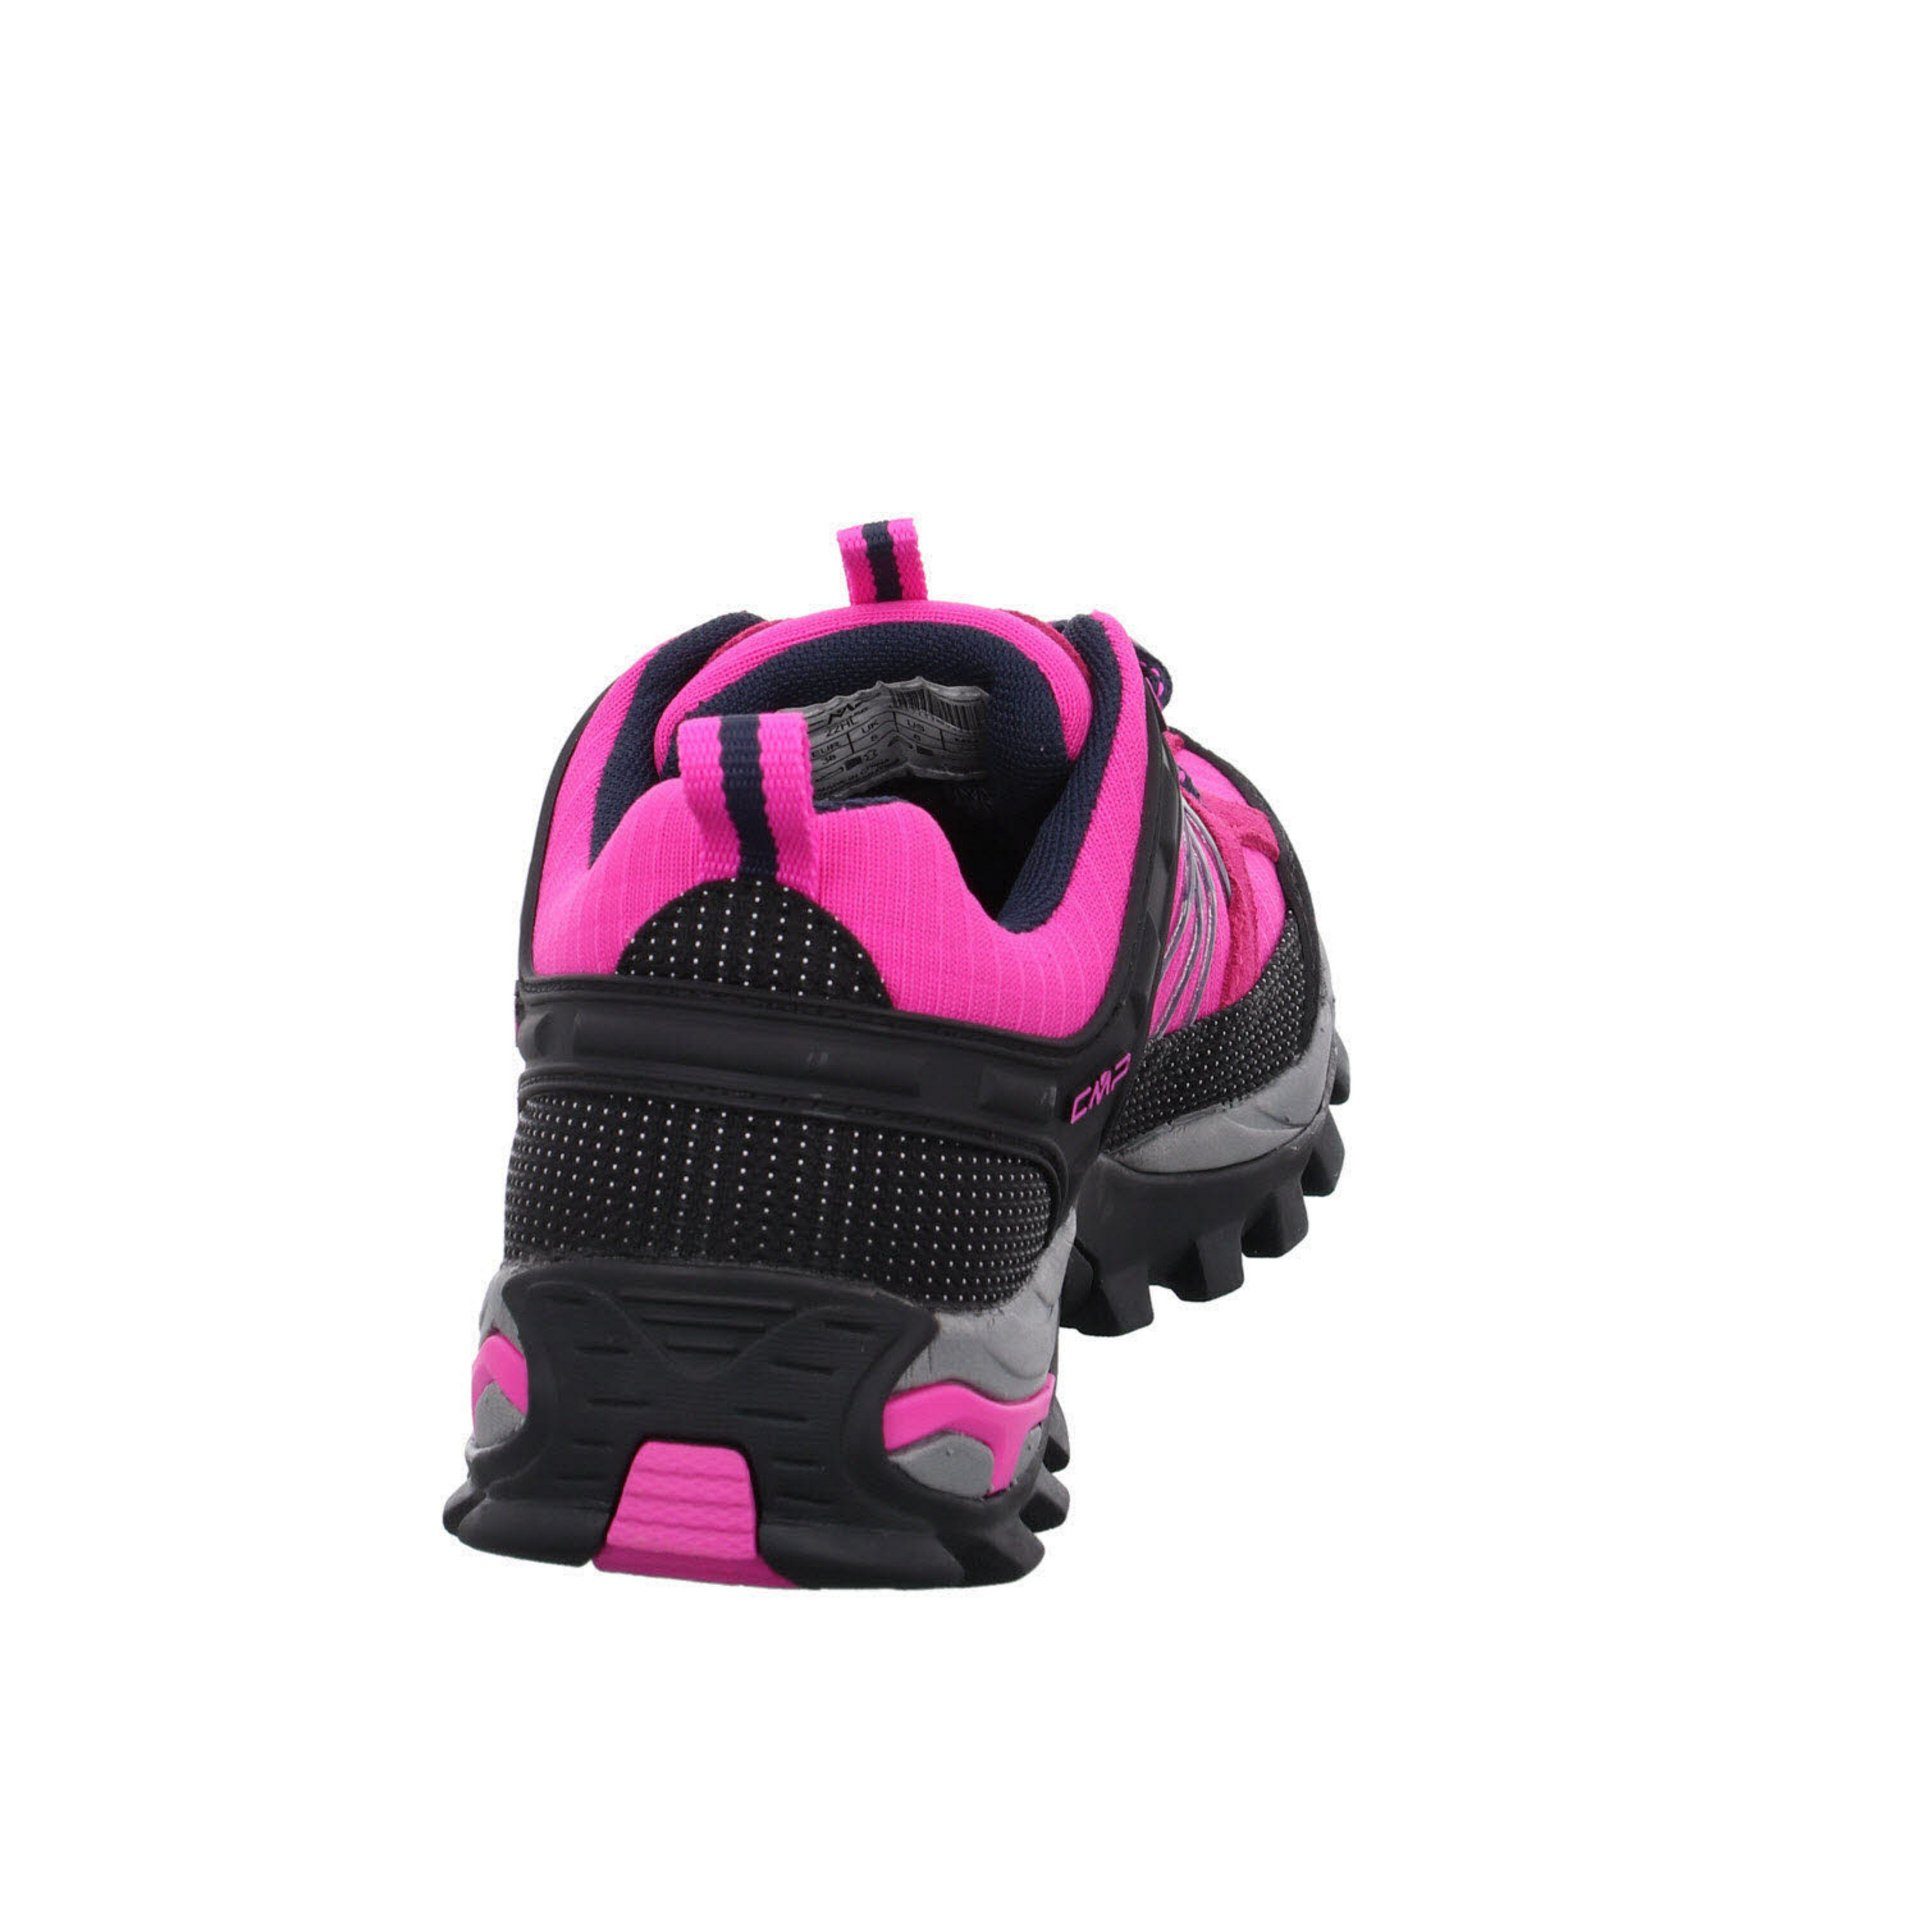 Leder-/Textilkombination Low CMP Outdoorschuh pink Schuhe (03201886) Outdoor Rigel Damen fluo-b.blue Outdoorschuh